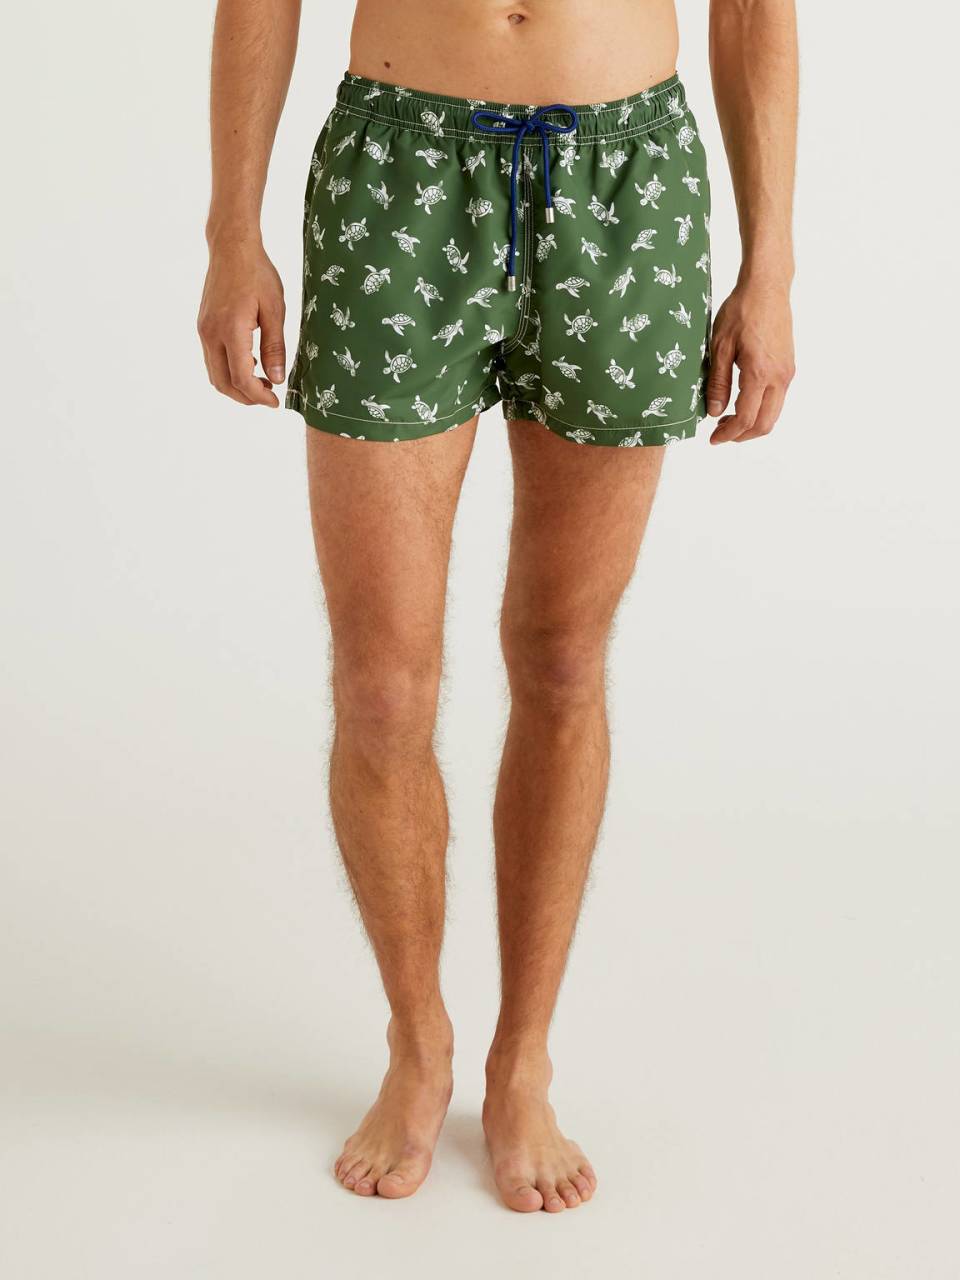 Benetton Short patterned swim trunks. 1